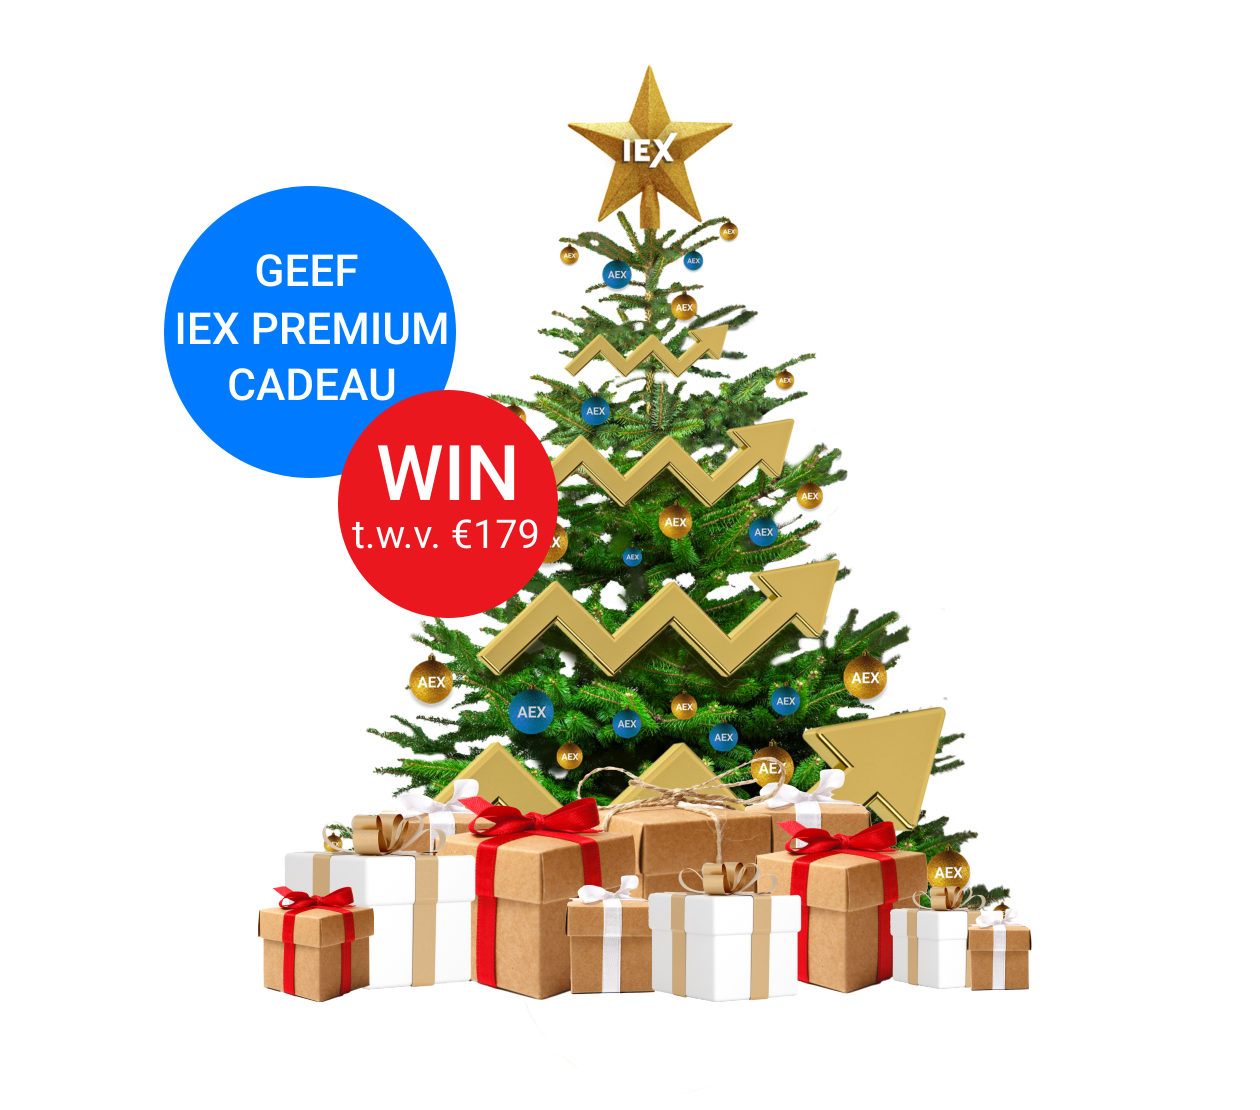 kerstboom met pakjes, sticker geef iex premium cadeau en een sticker win t.w.v.€179